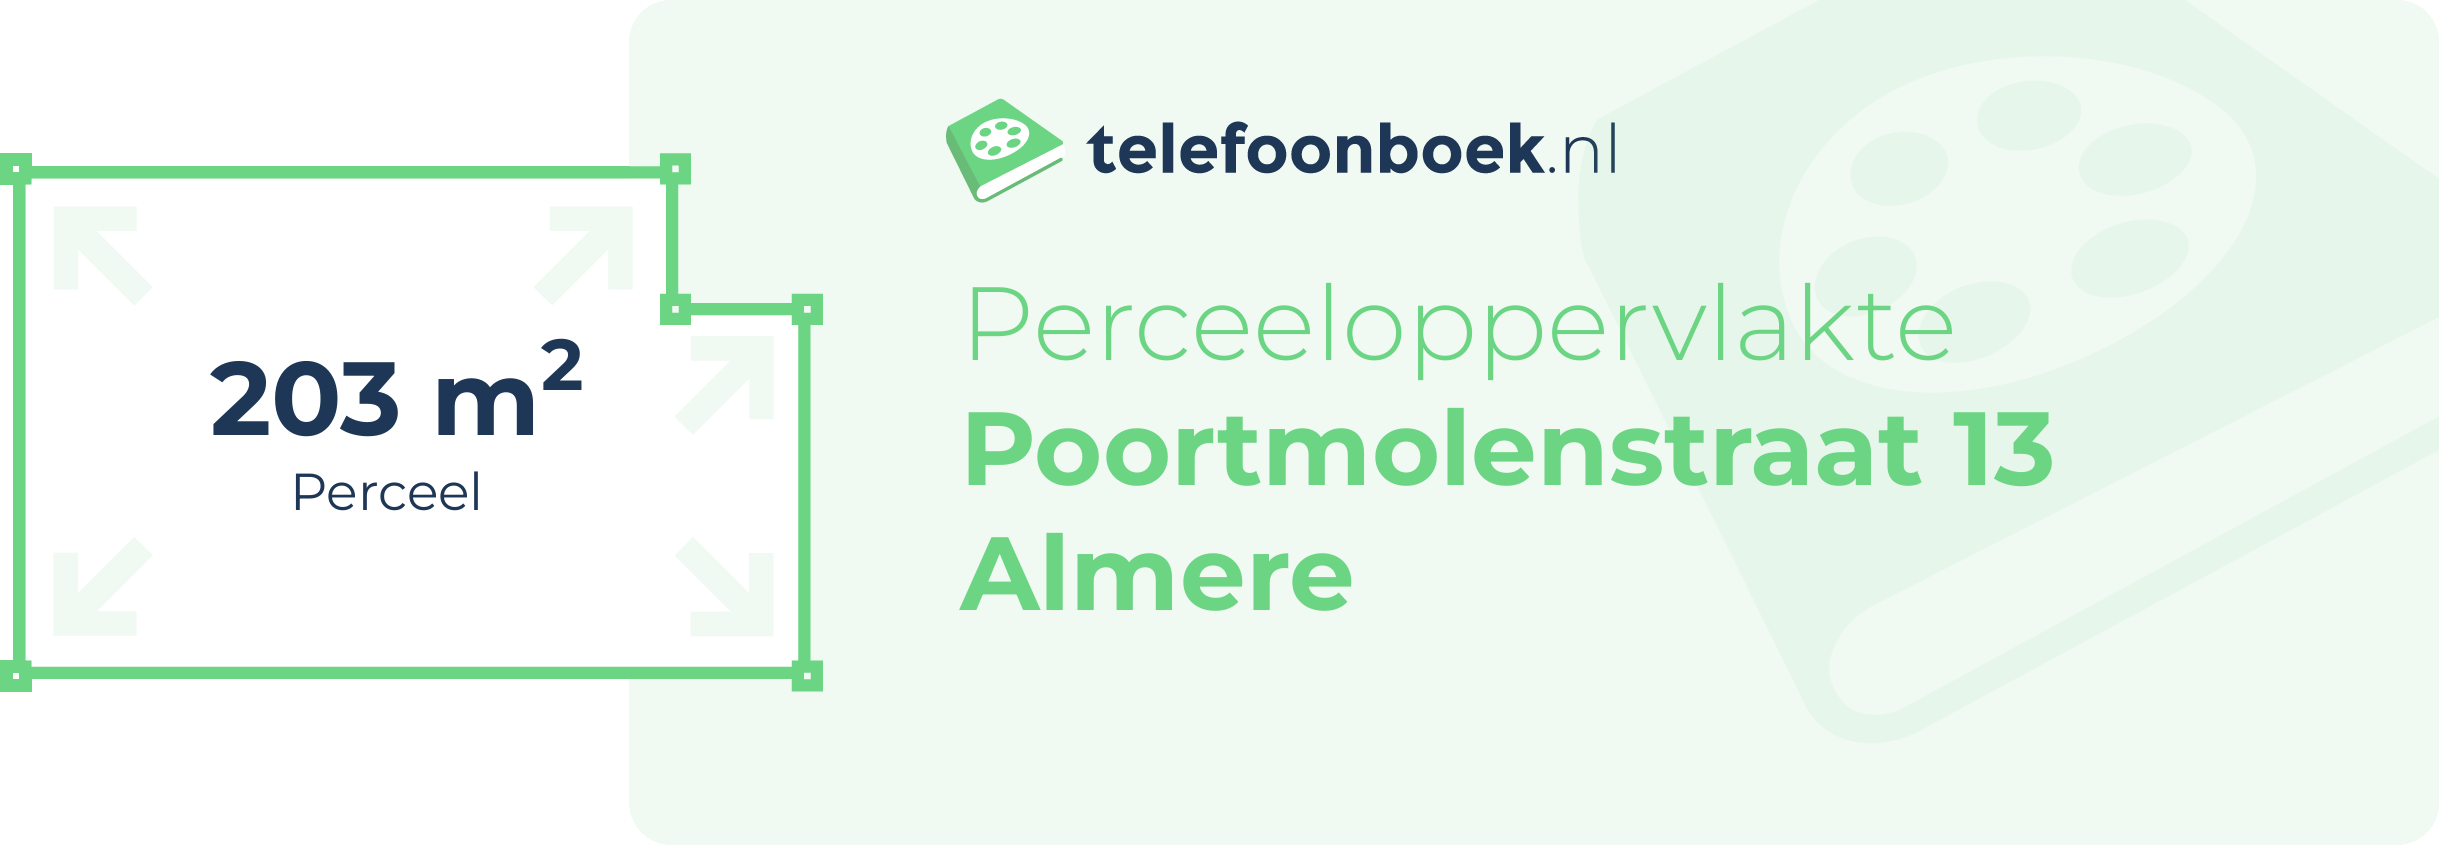 Perceeloppervlakte Poortmolenstraat 13 Almere